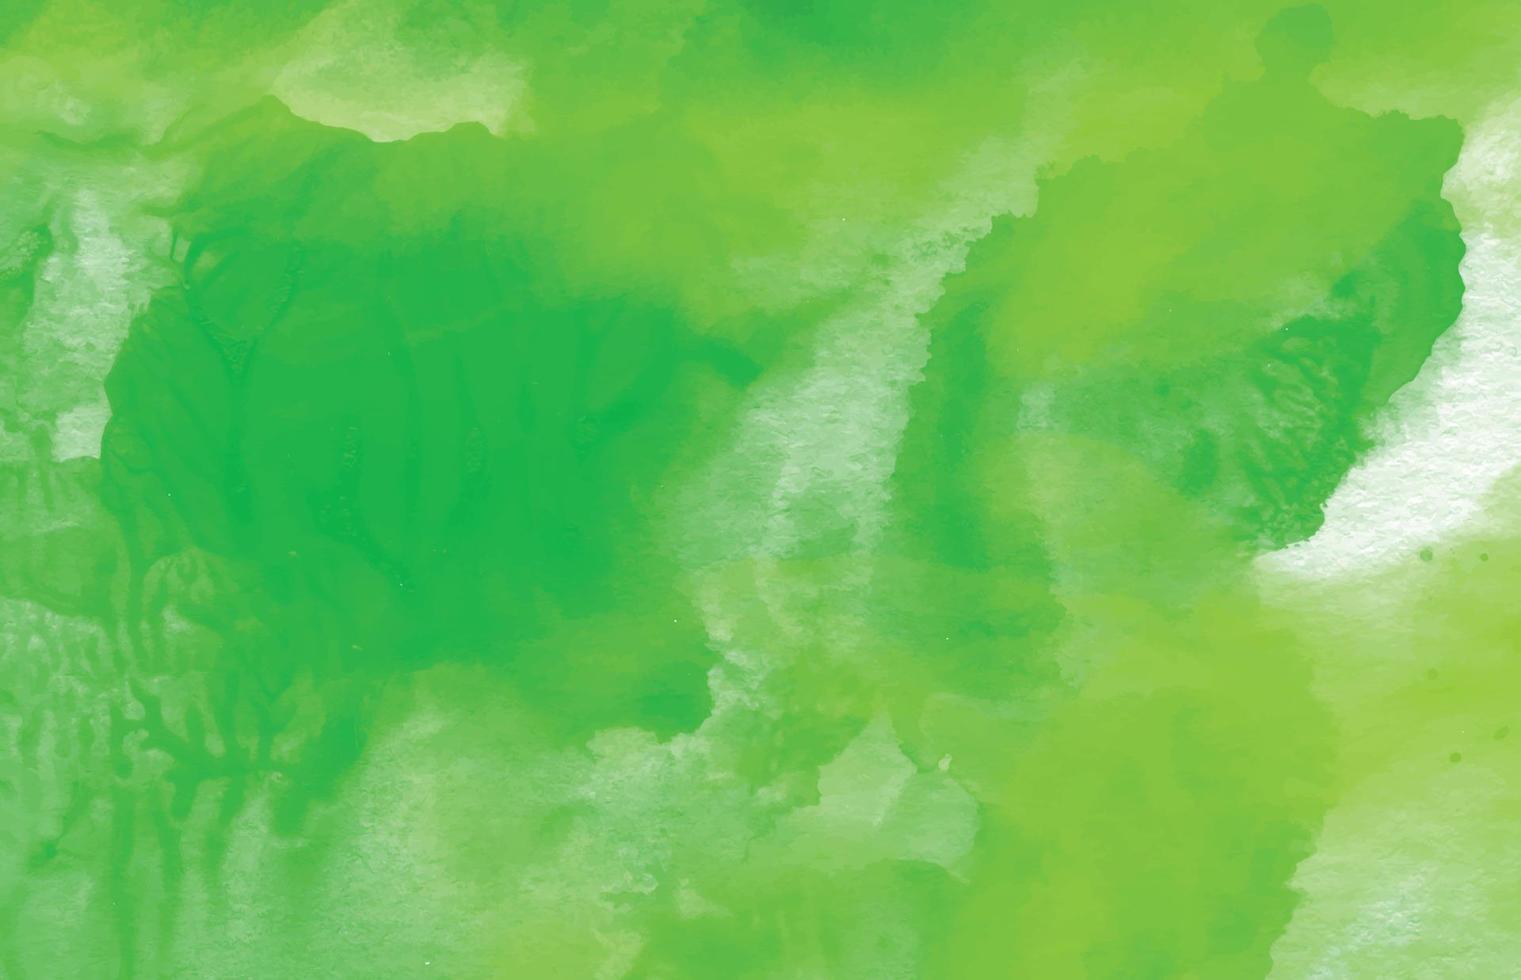 fundo abstrato com respingos de água verde, vetor livre